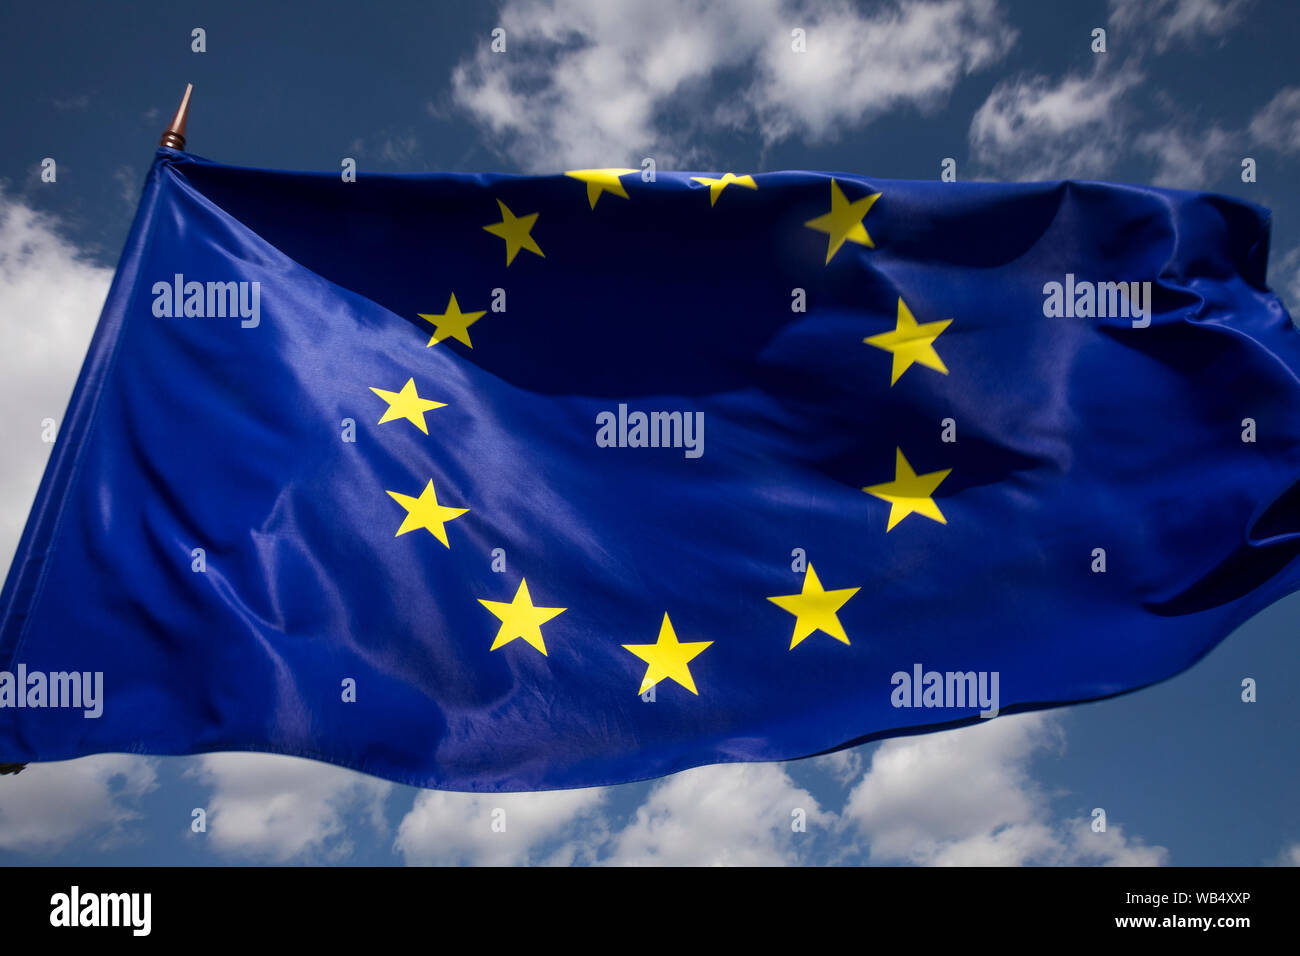 View of European Union EU flag on blue sky background Stock Photo